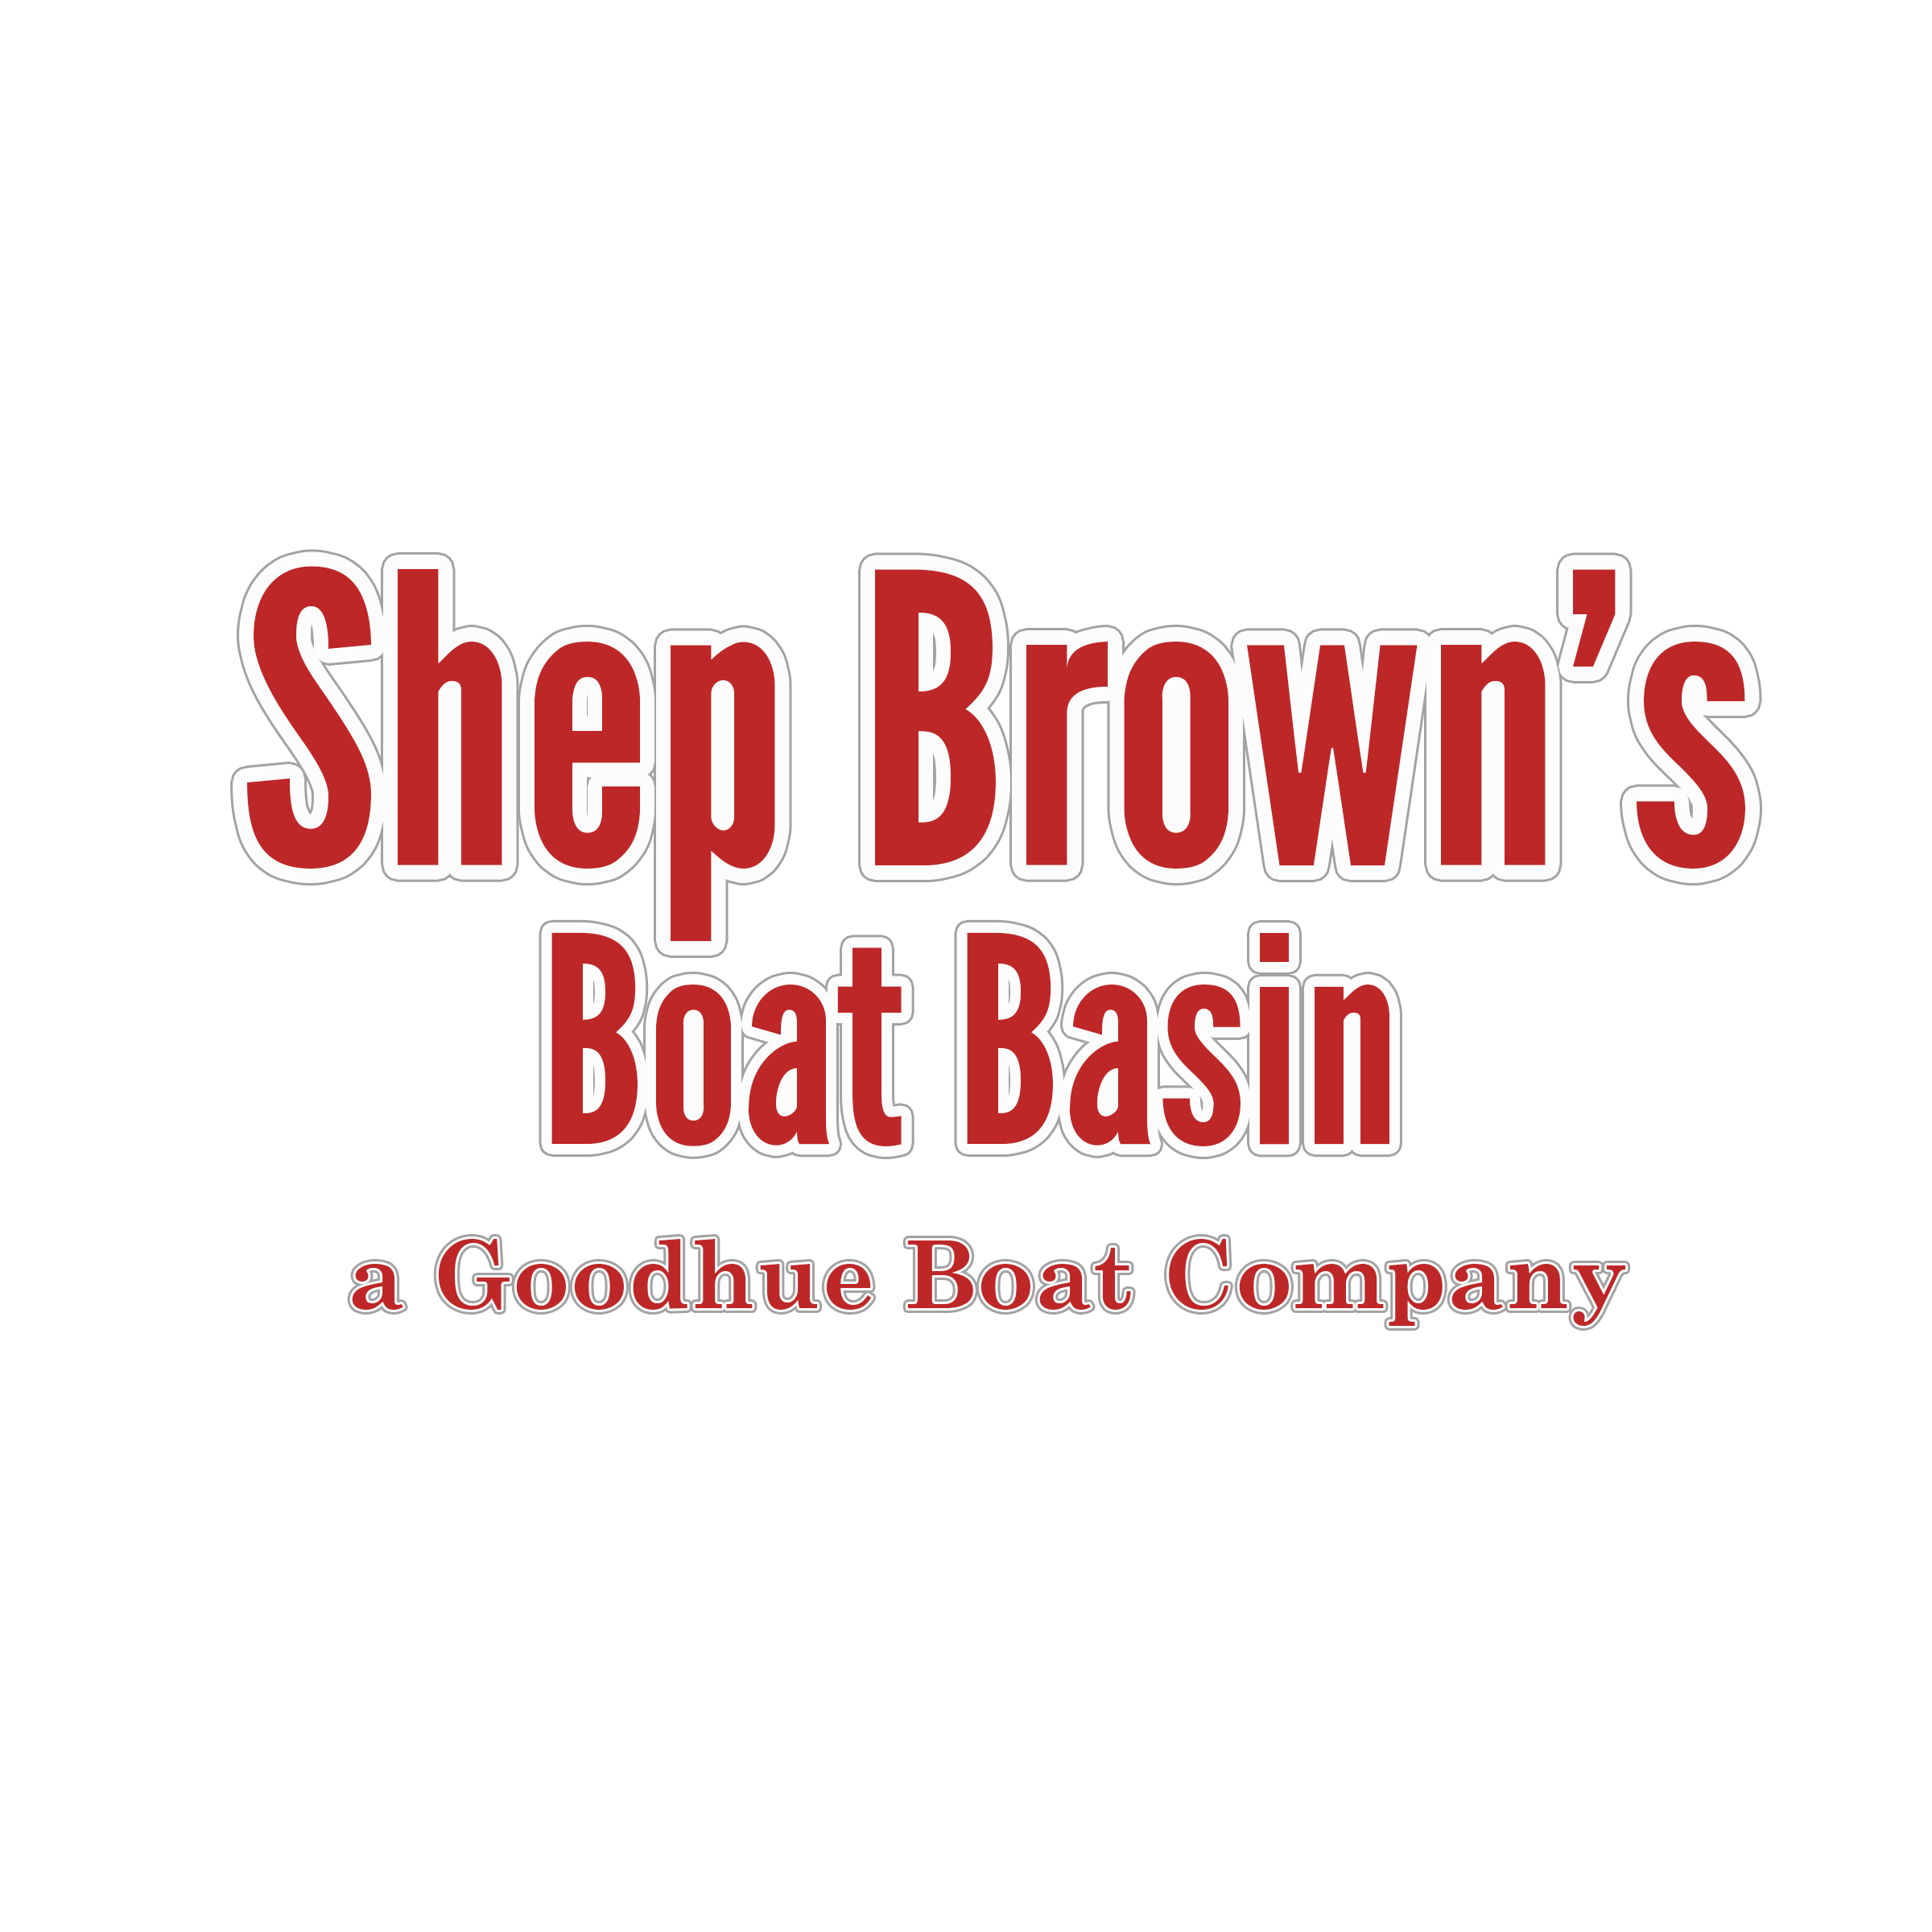 Shep Browns Boat Basin a Goodhue Boat Company 